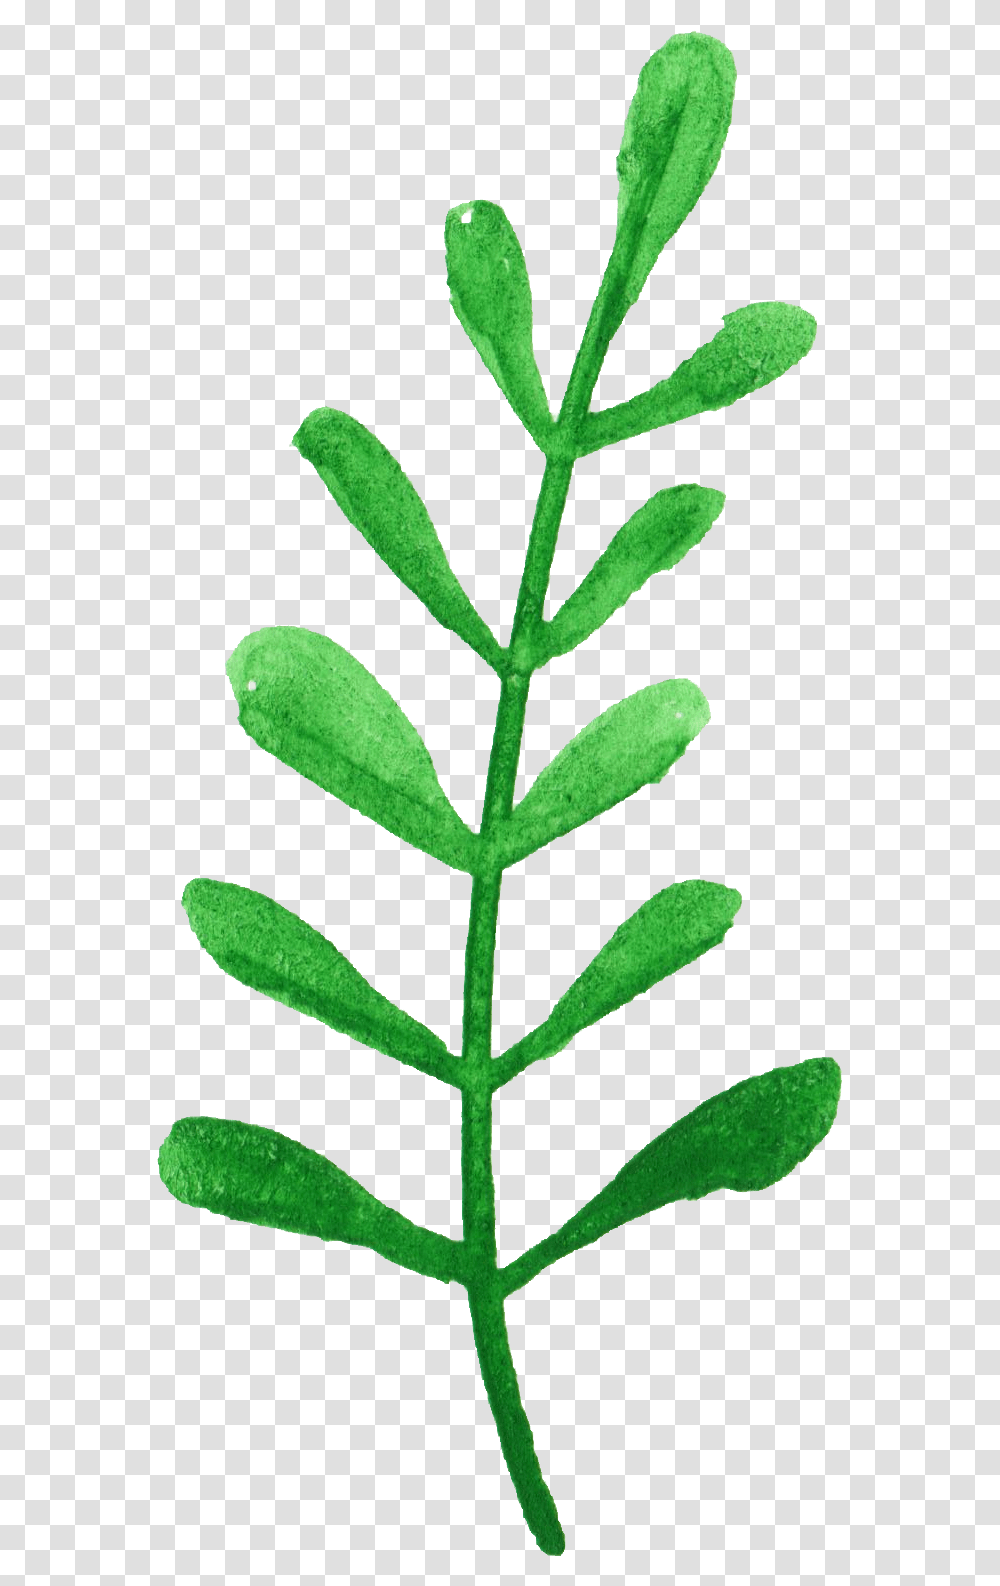 Plant Stem, Leaf, Potted Plant, Vase, Jar Transparent Png